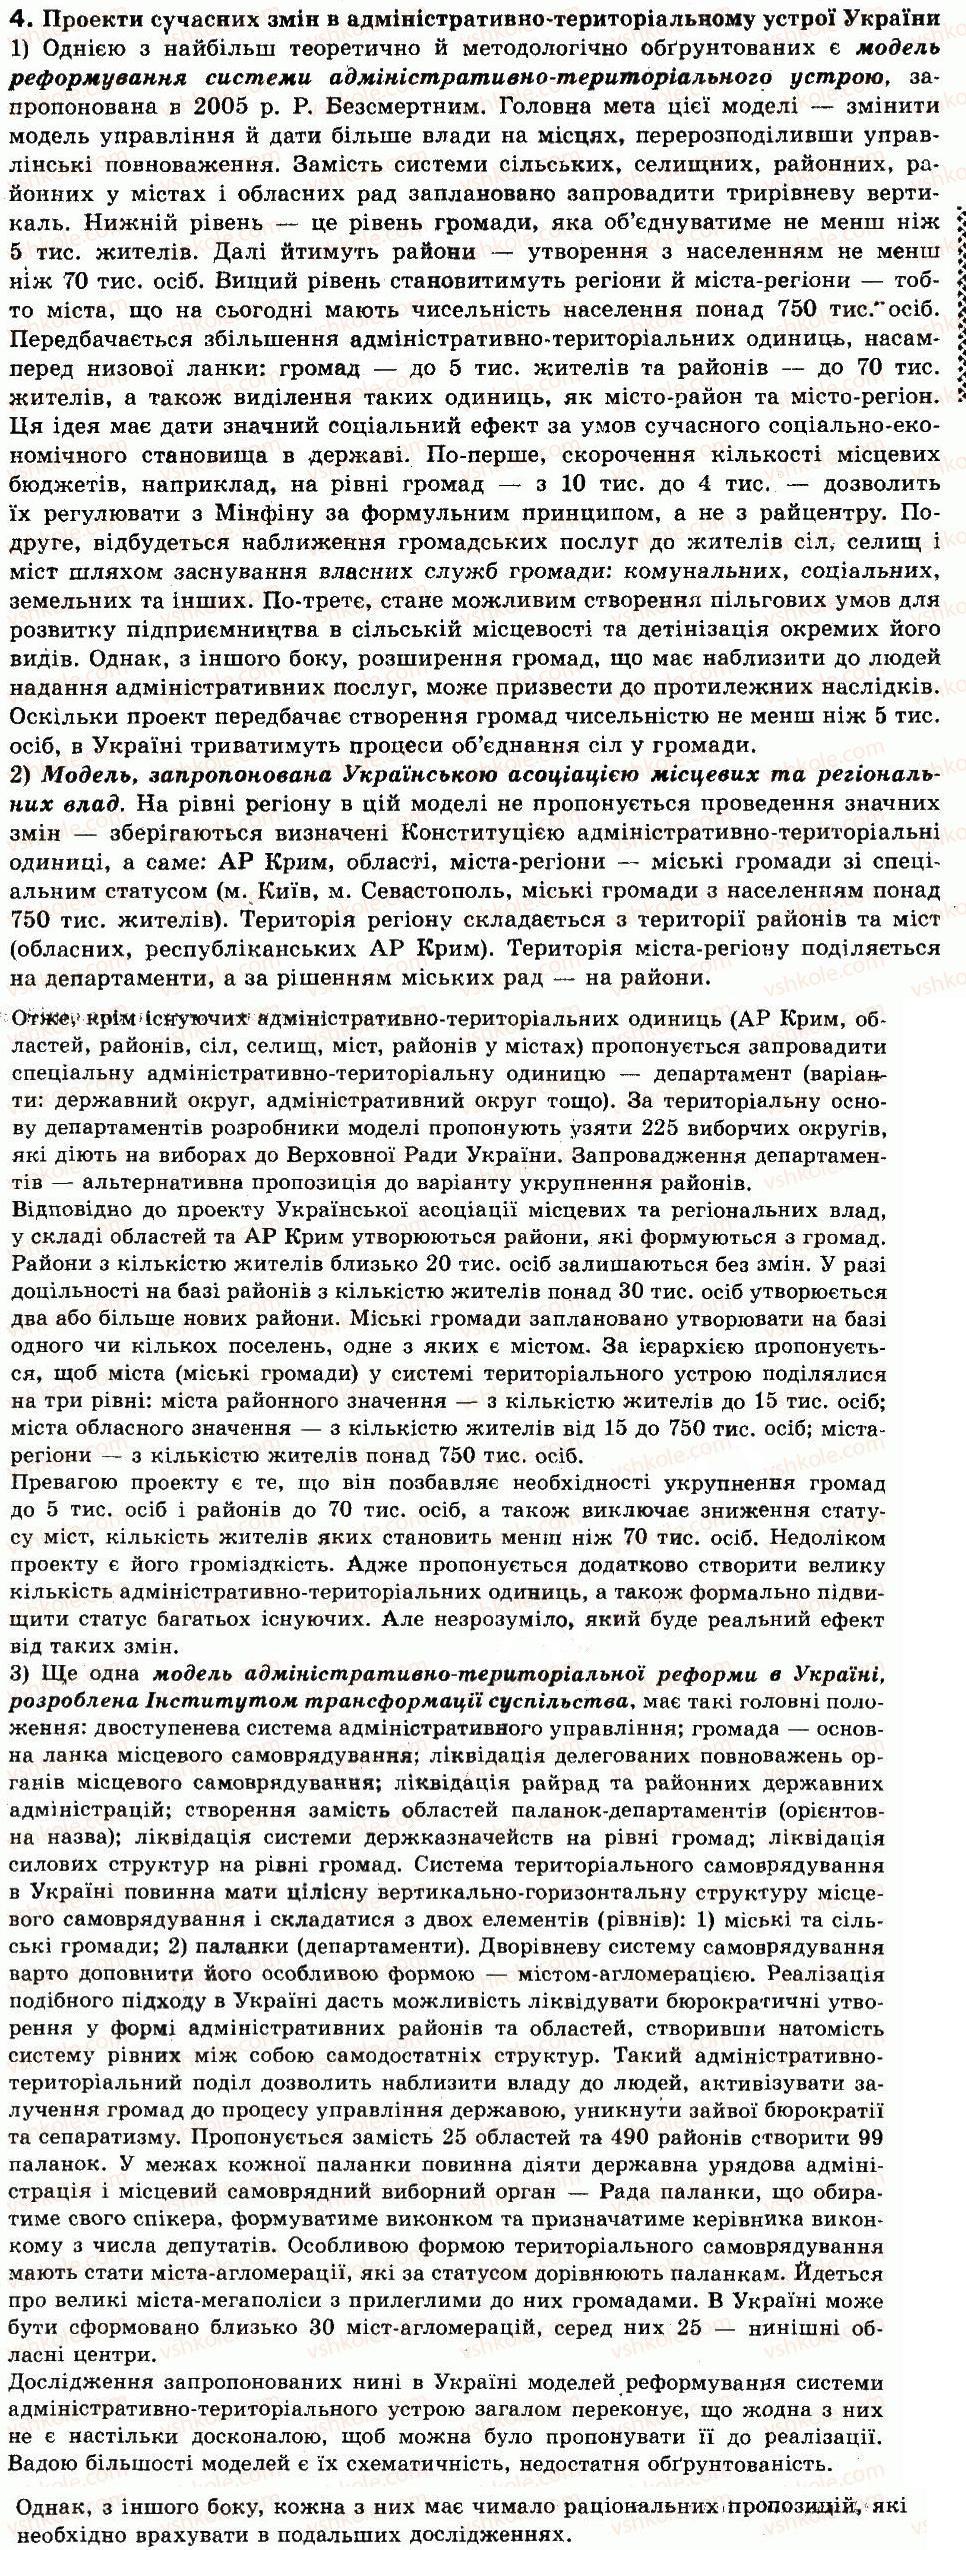 Завдання № 4 - Самоперевірка - ГДЗ Географія 9 клас В.Ю. Пестушко, Г.Ш. Уварова 2009